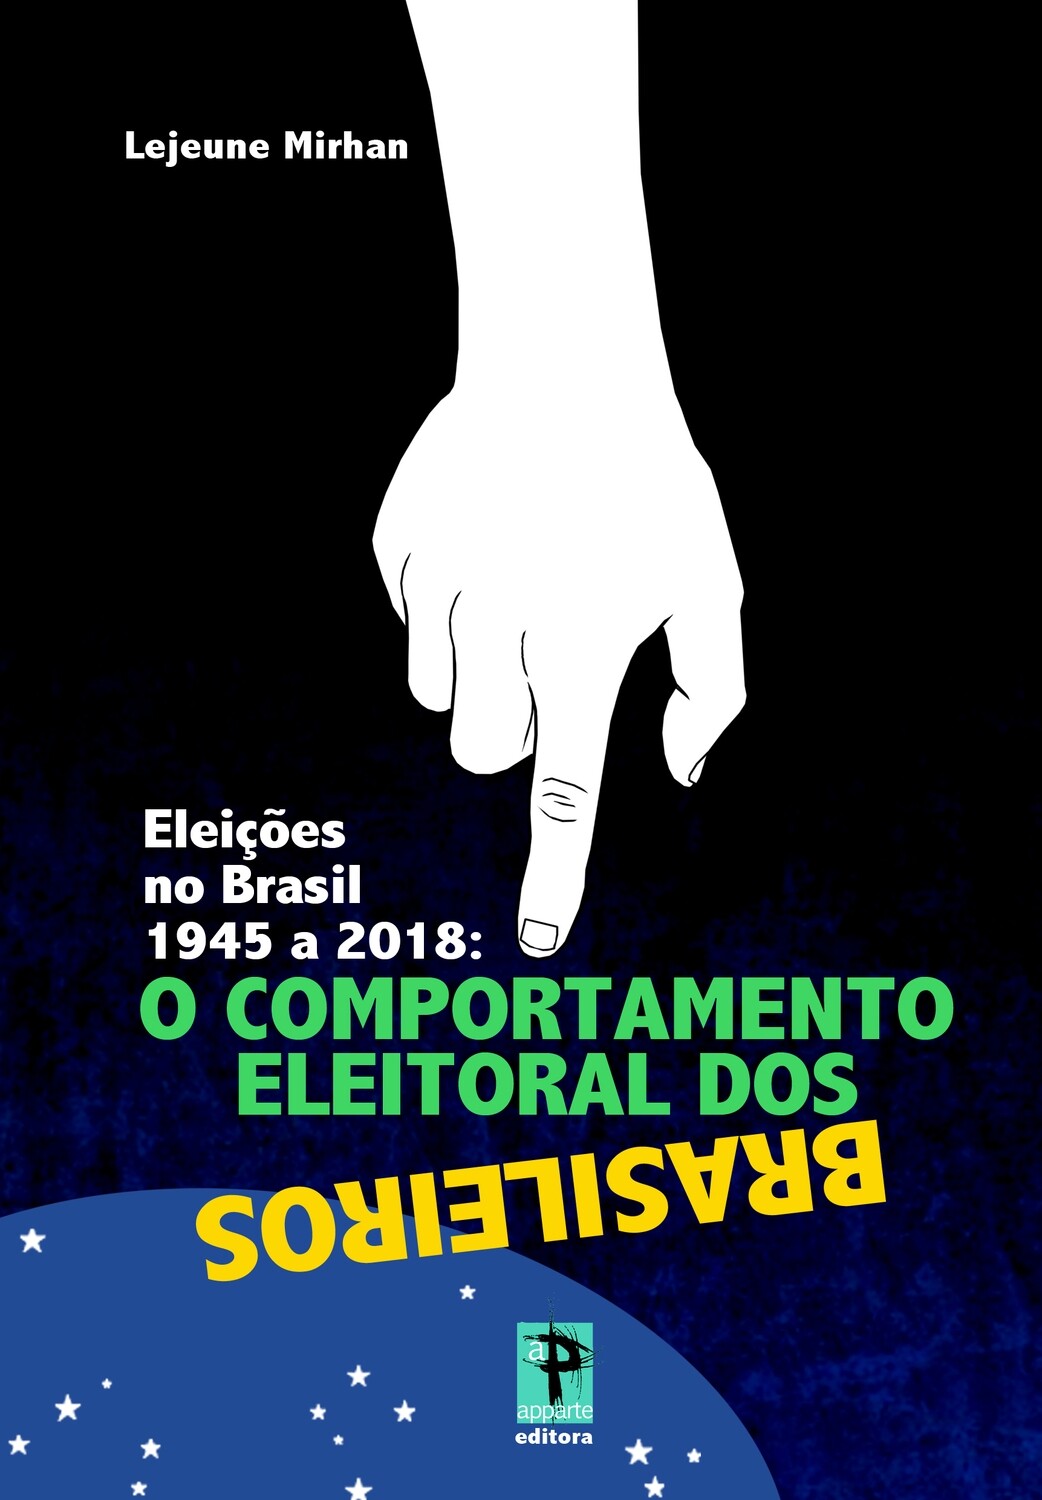 “Eleições no Brasil 1945 a 2018: O comportamento eleitoral dos
brasileiros”